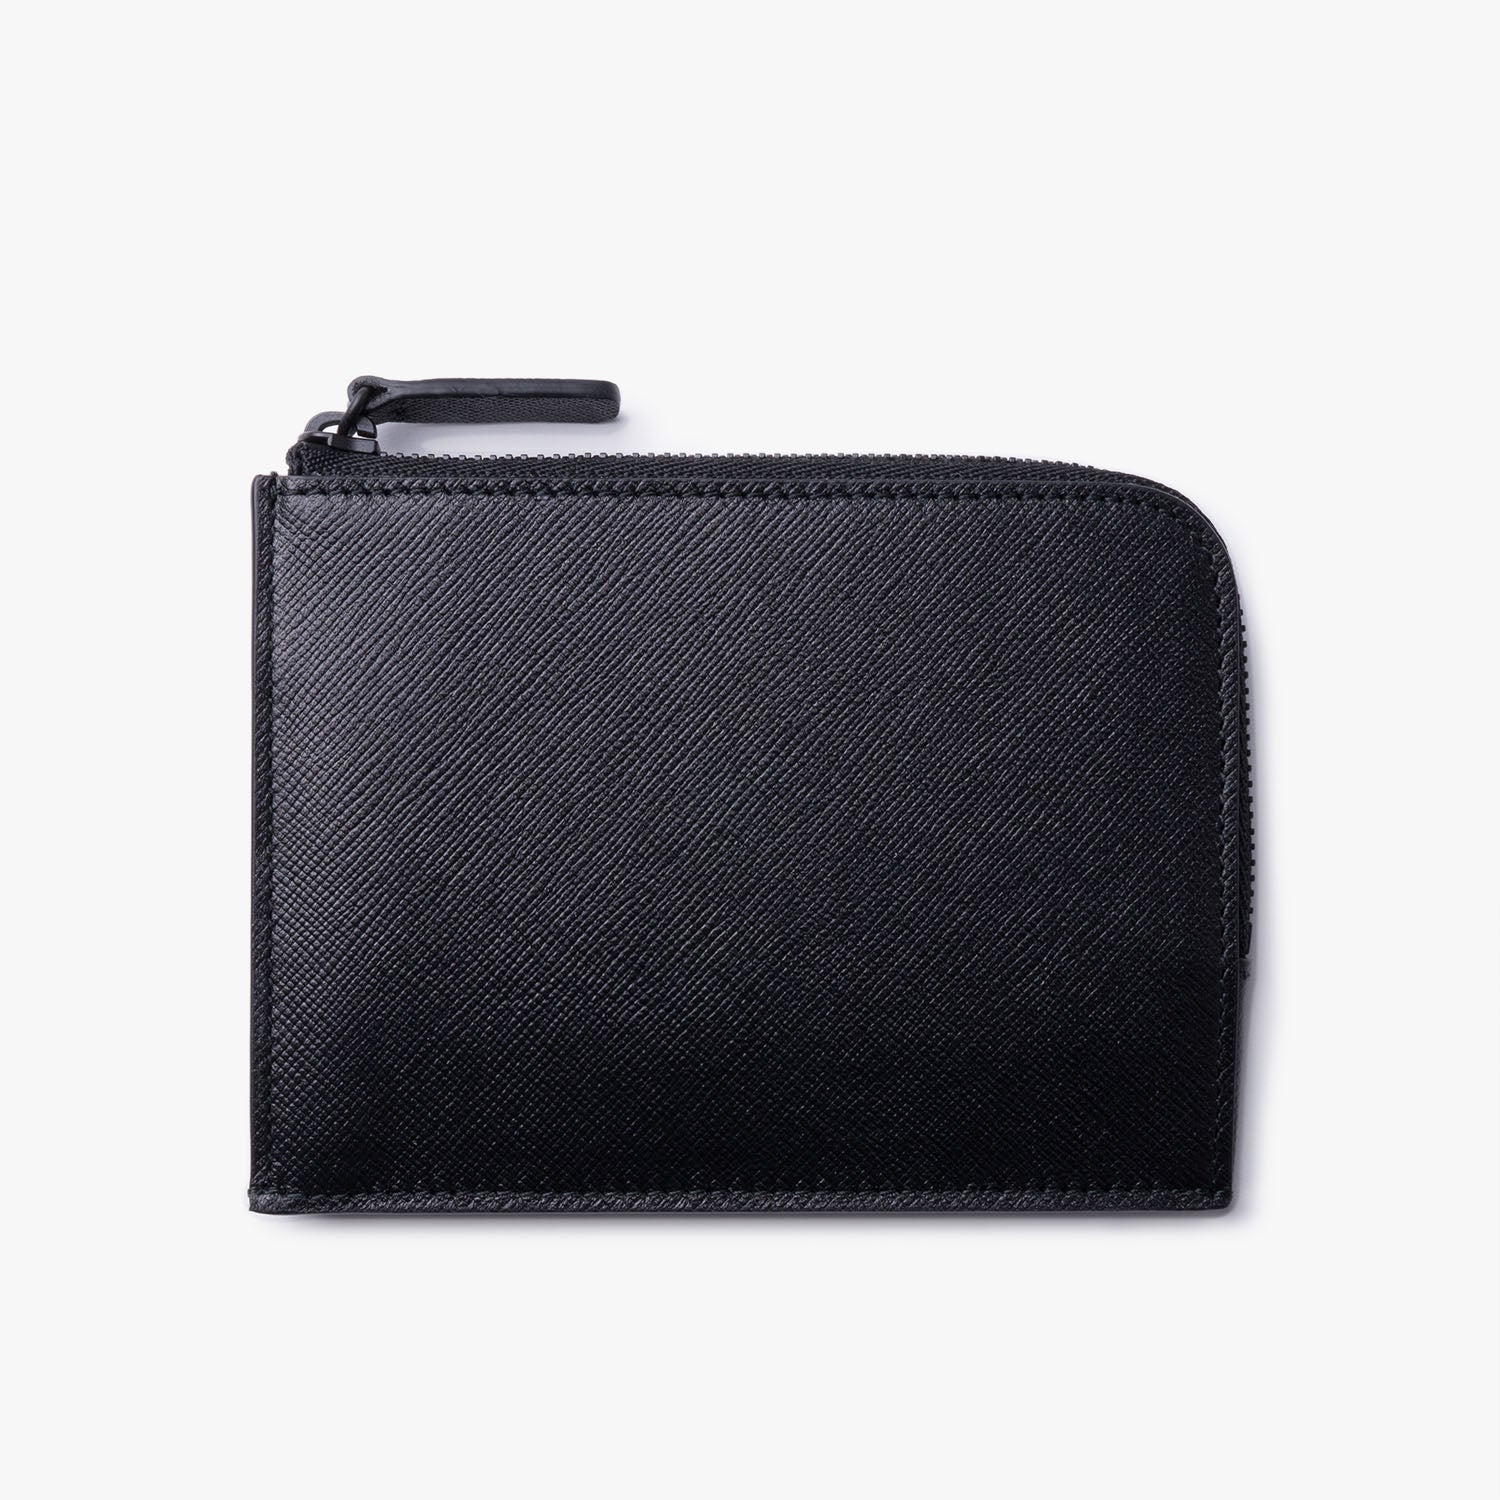 Zipper Wallet - Black Saffiano